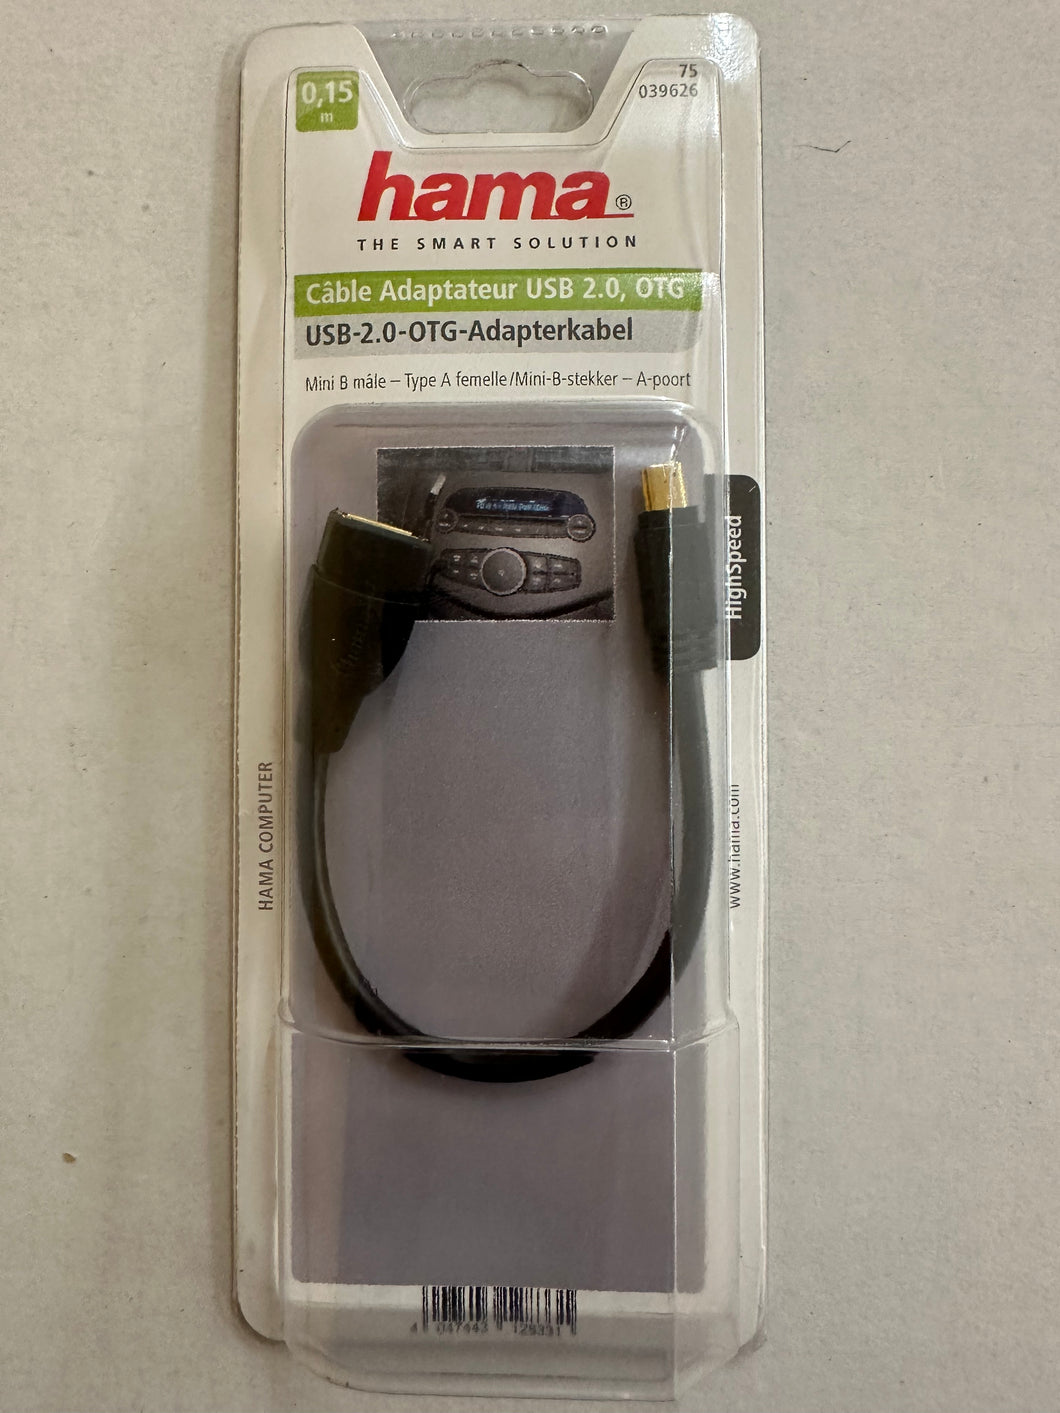 Hama OTG USB Adapter-Kabel (microUSB-Stecker auf USB-Buchse) für Smartphones und Tablets, vergoldet, 0,15 m